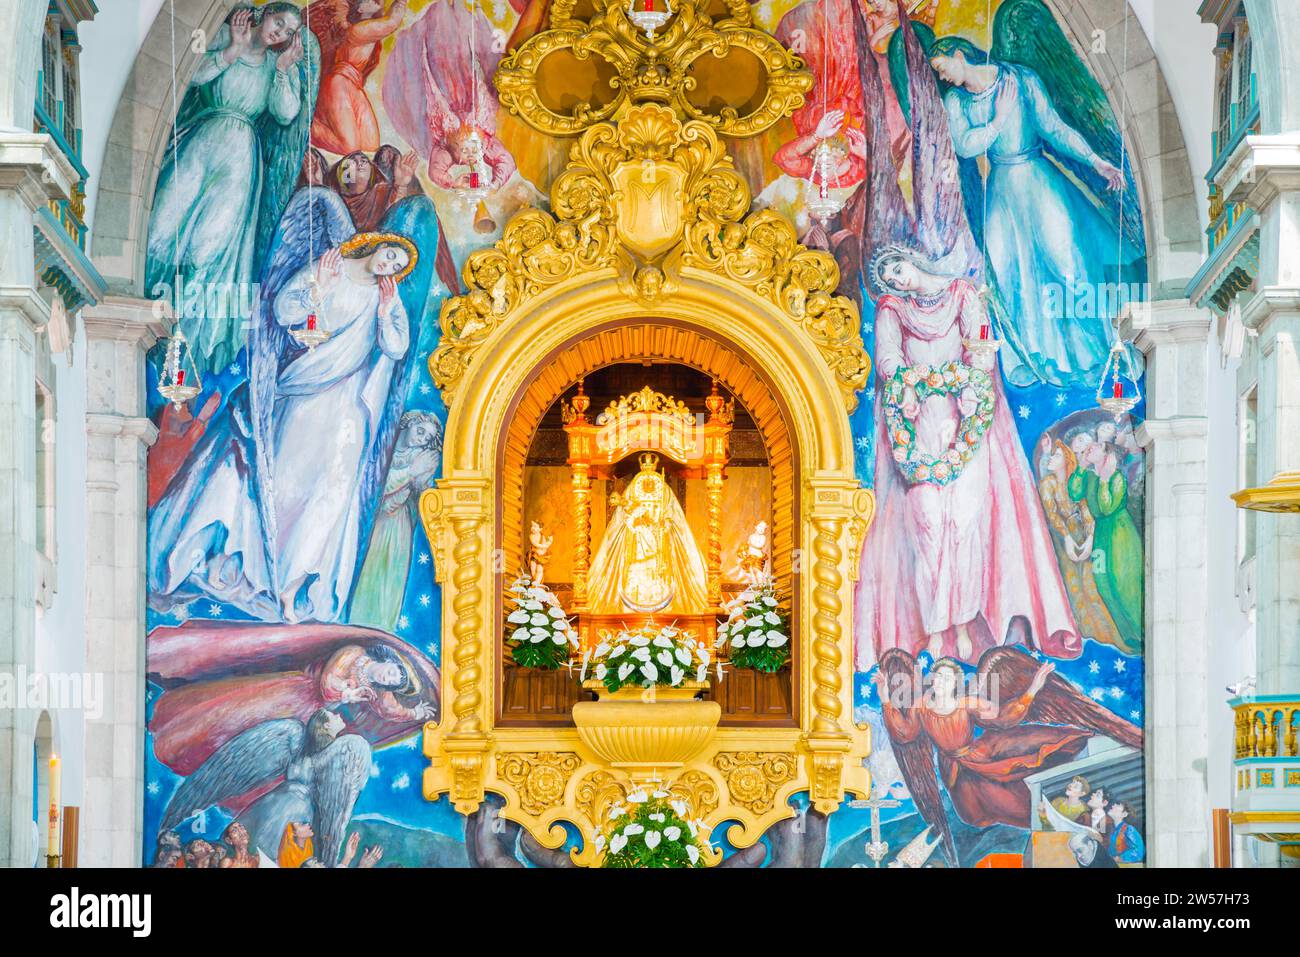 Statue of the Virgin Mary, Virgen de Canelaria, patron saint of the Canary Islands archipelago, Basilica de Nuestra Senora de la Candelaria Stock Photo